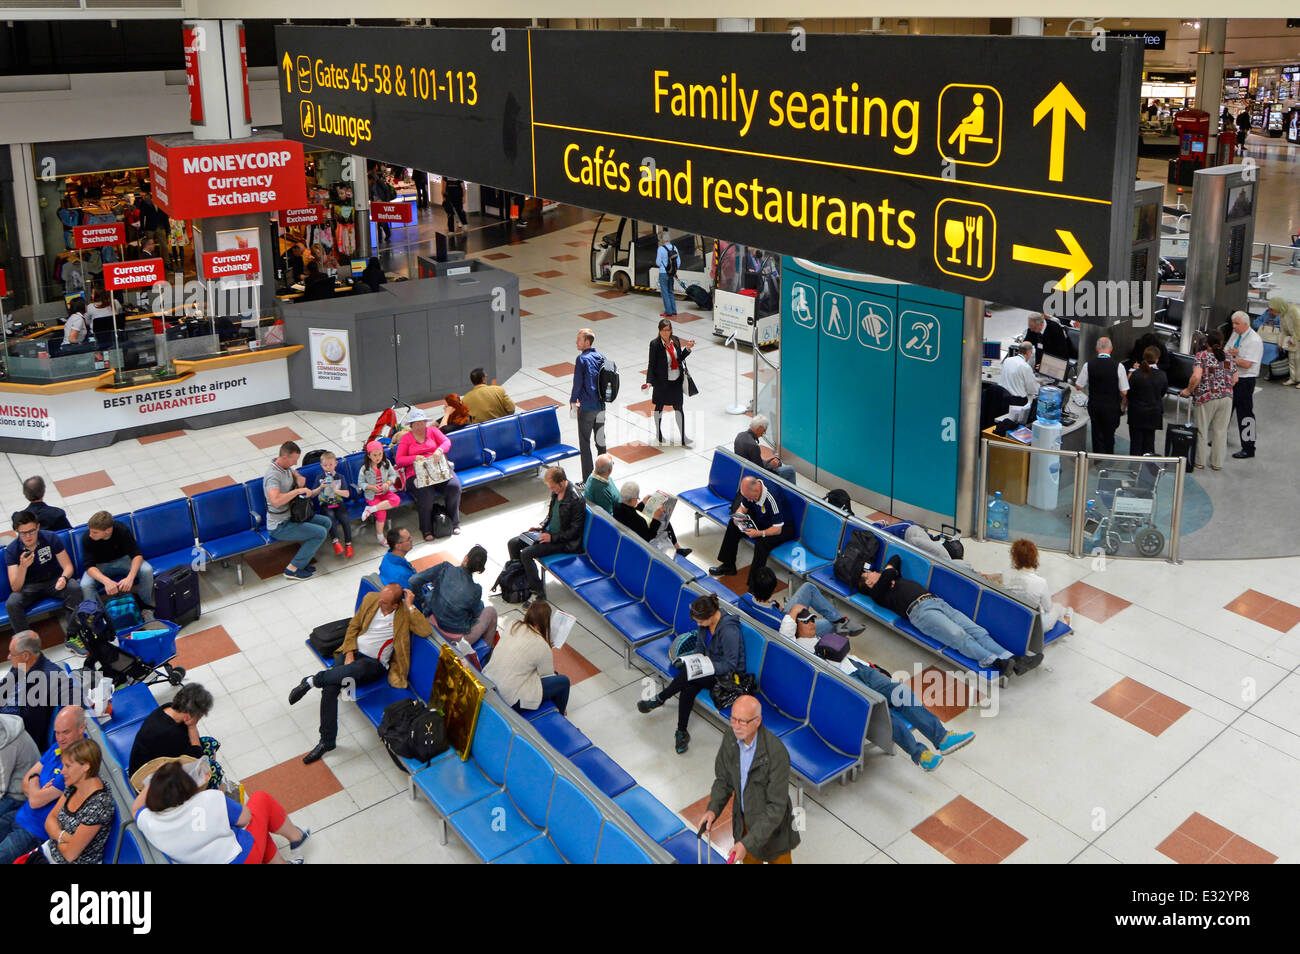 Mit Blick auf den Familiensitzbereich und die Cafes in den Restaurants, Schilder zum Flughafen London Gatwick North Terminal, Abfluglounge und Einkaufshalle England UK Stockfoto